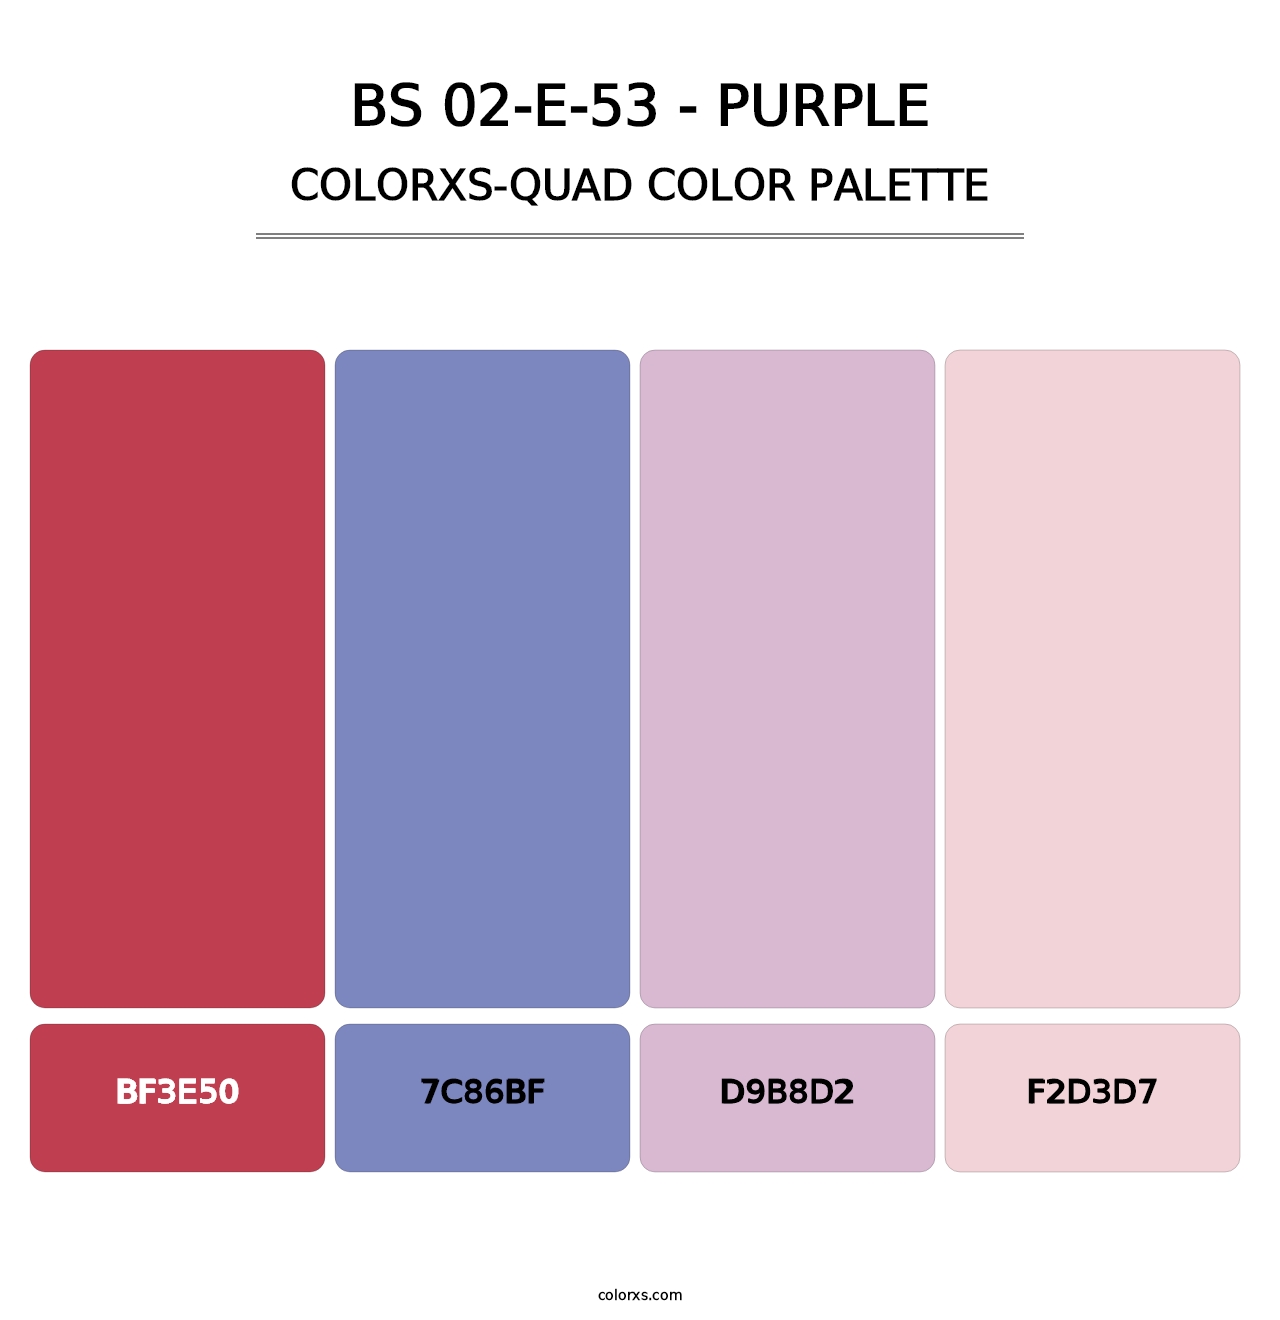 BS 02-E-53 - Purple - Colorxs Quad Palette